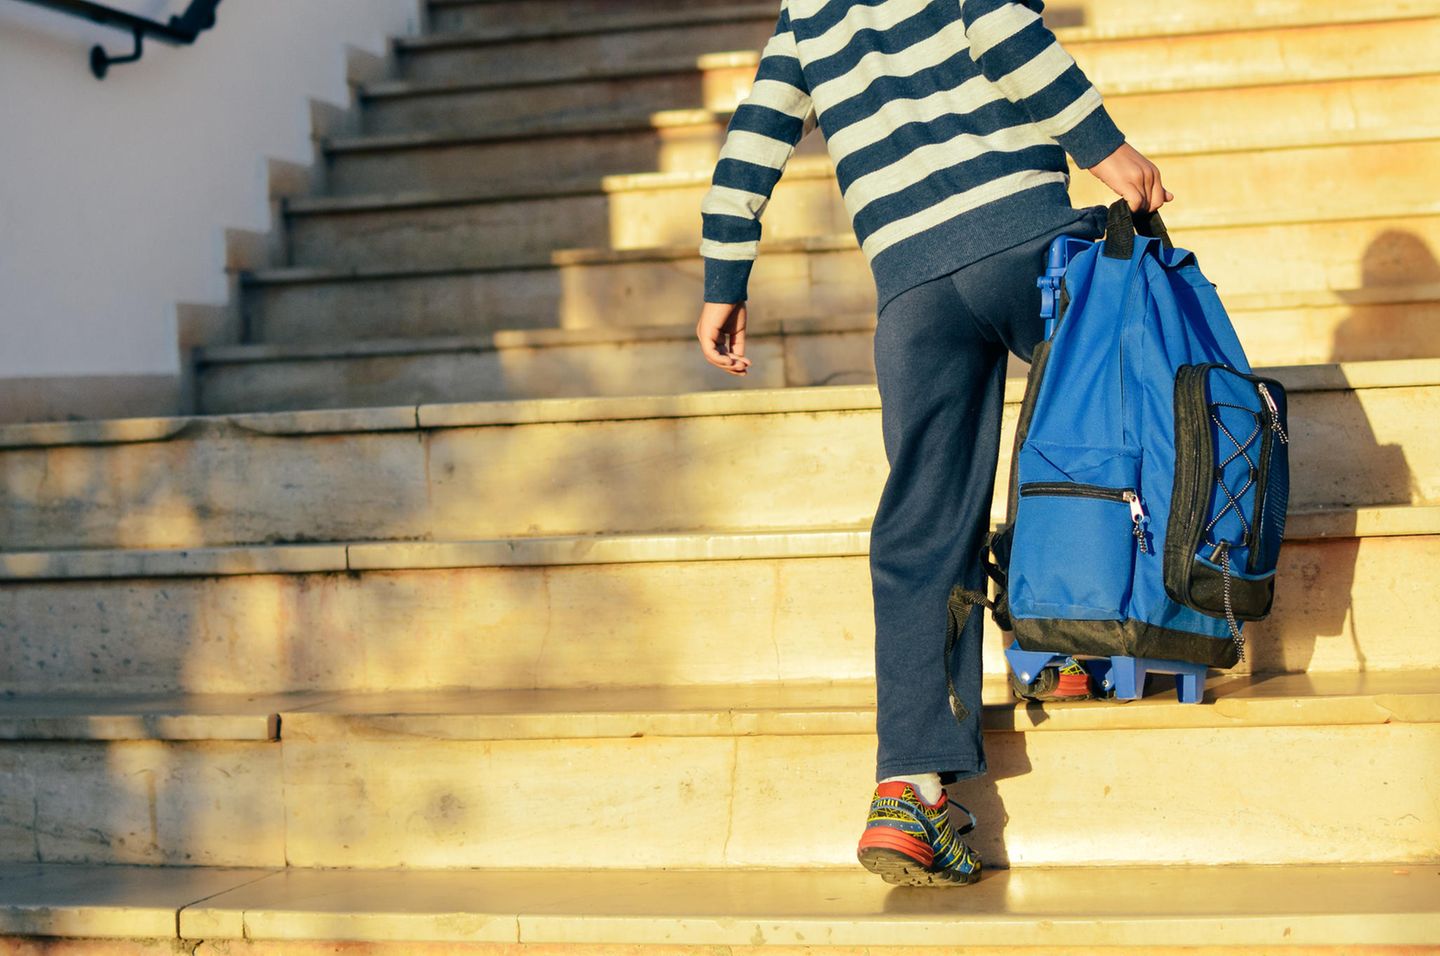 Vereinbarkeit: Junge geht Treppe hoch und trägt seine Schultasche